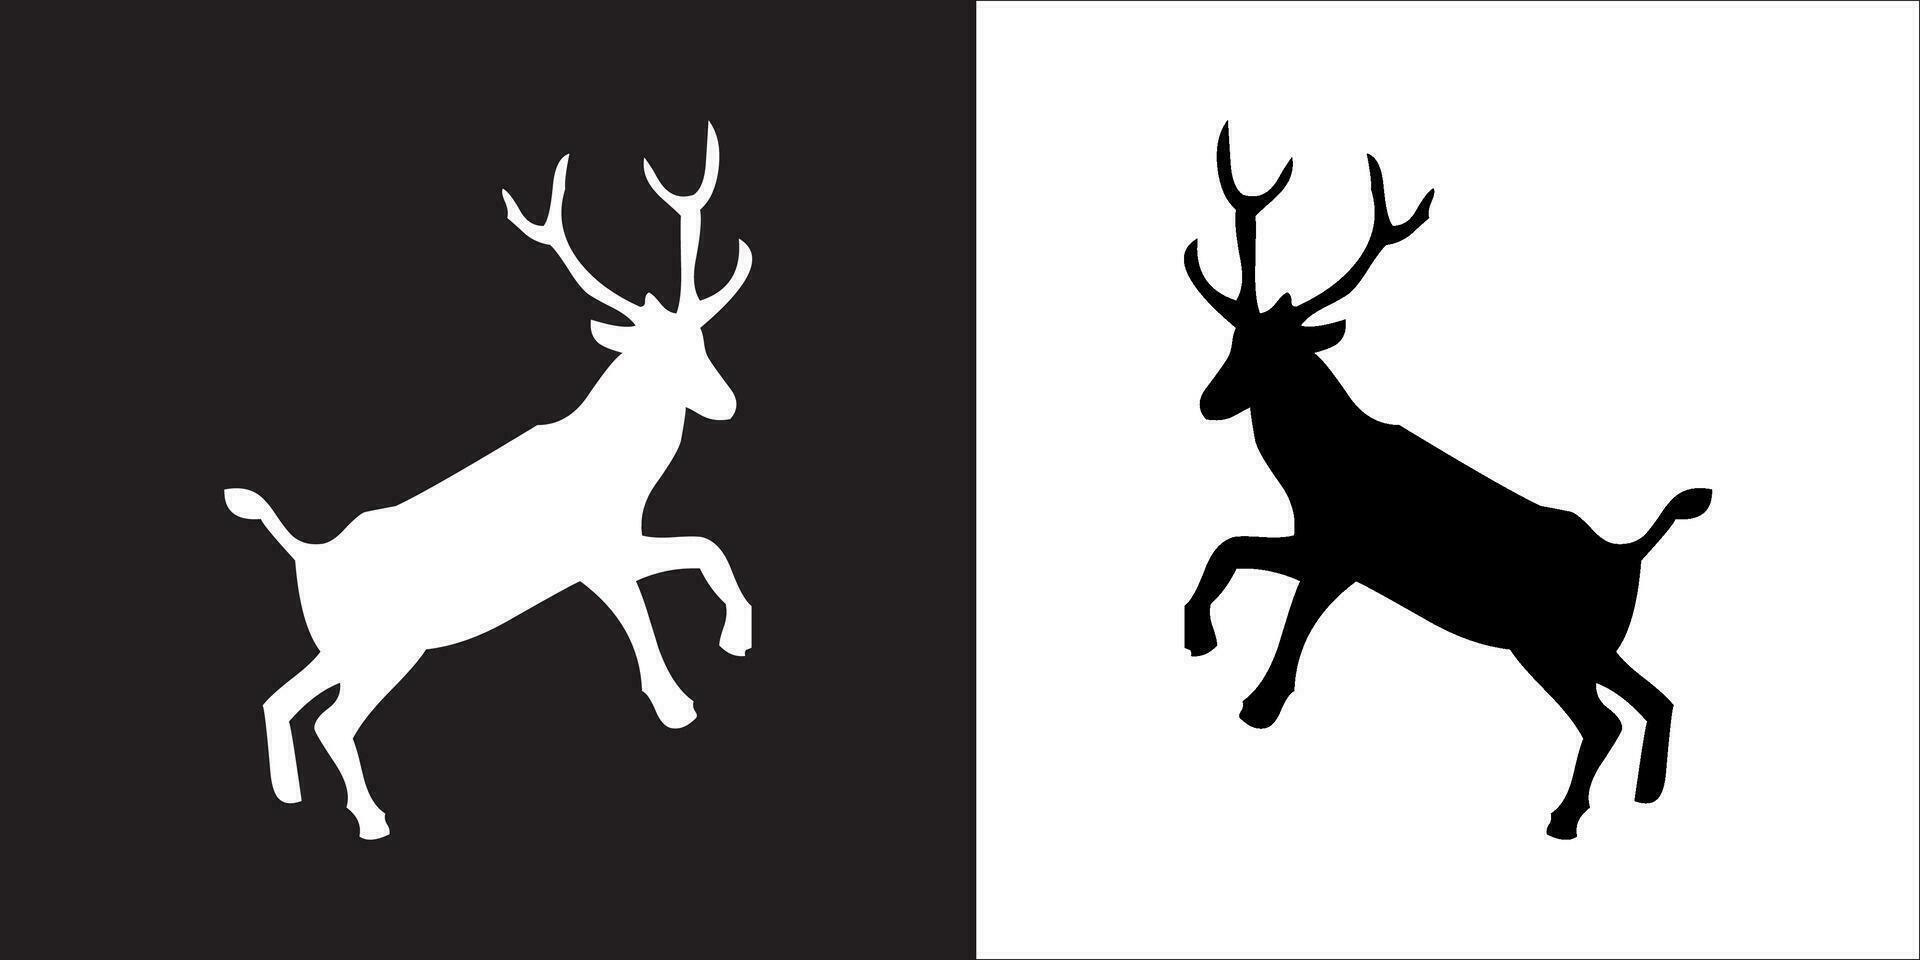 ilustración vector gráficos de ciervo icono